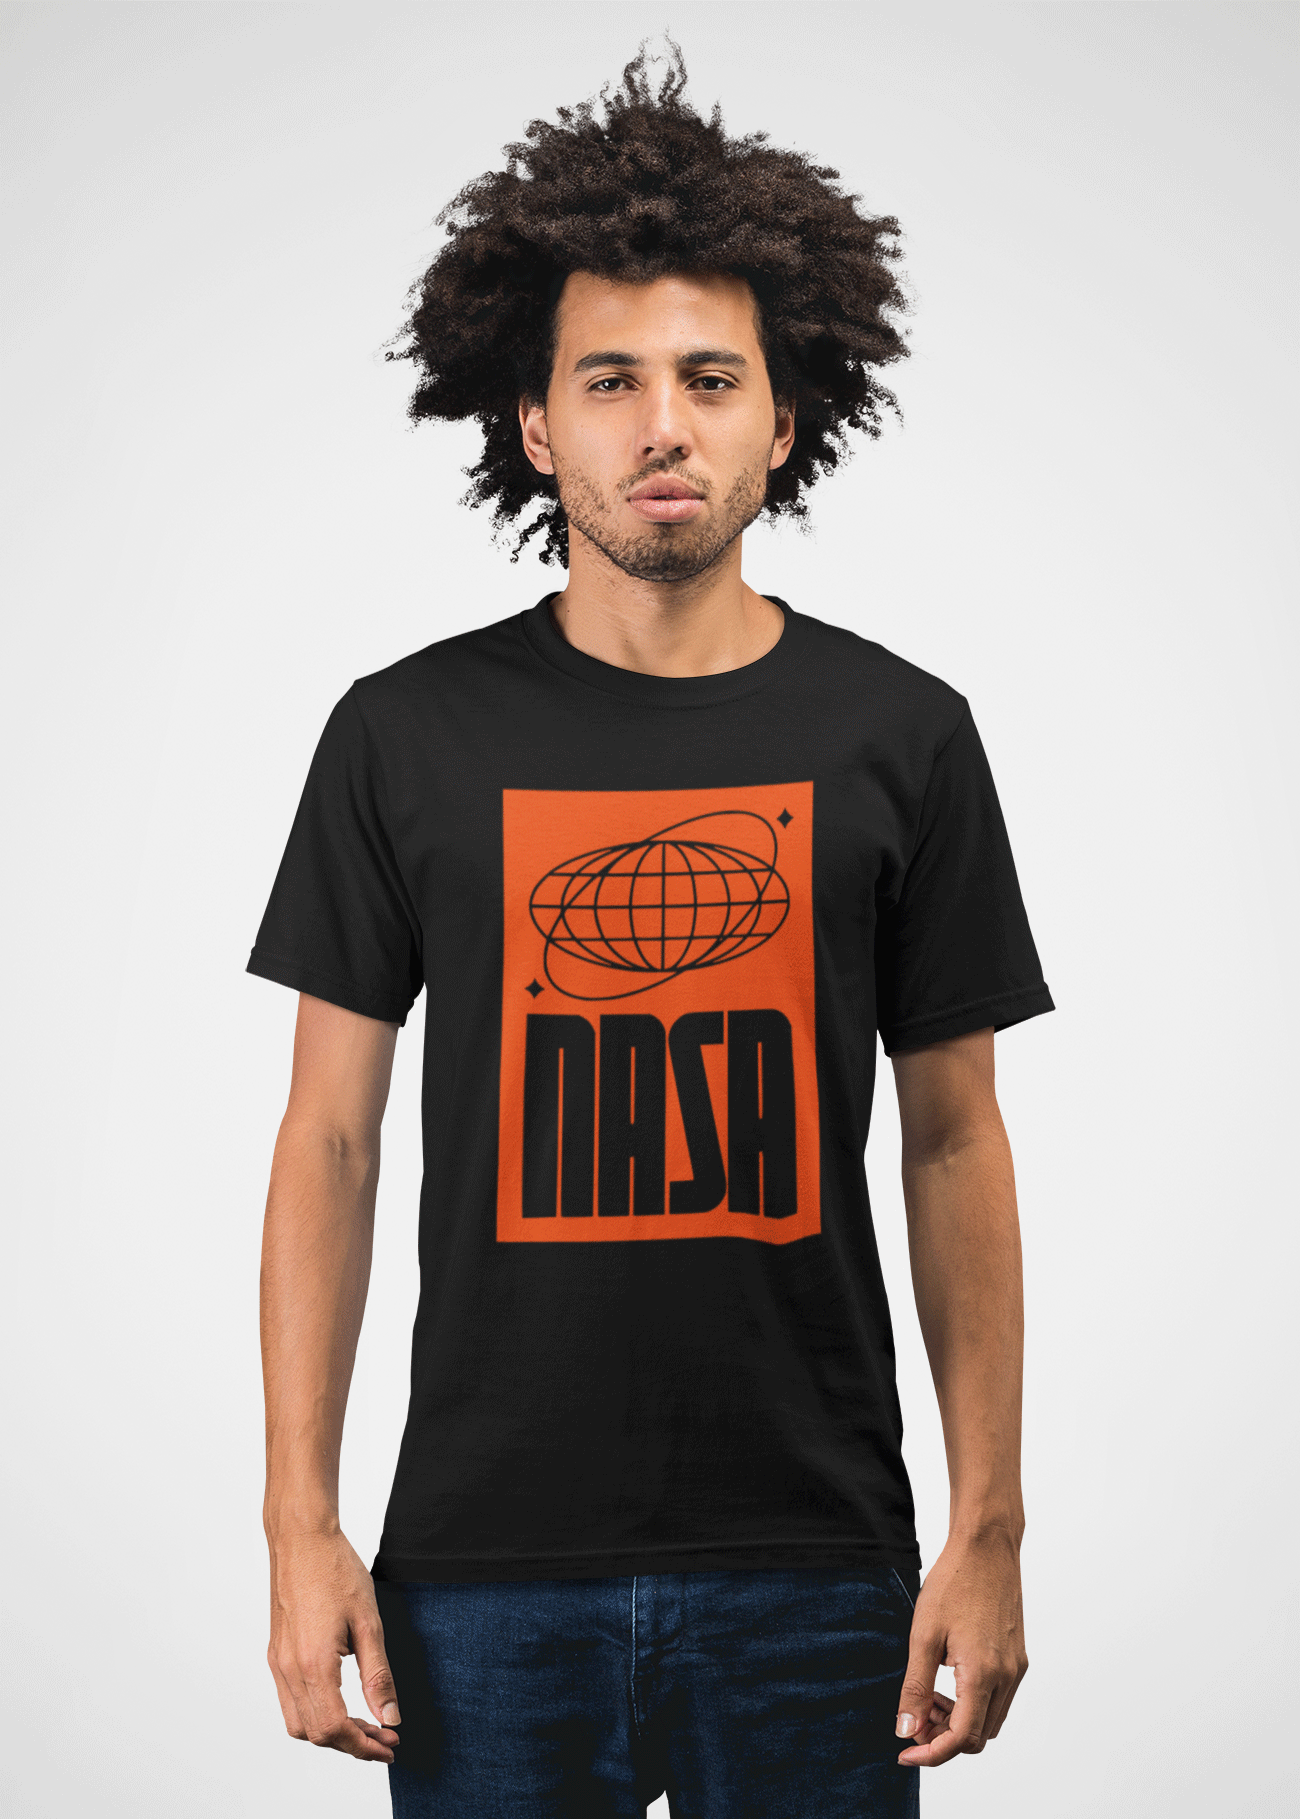 NASA the t-shirt